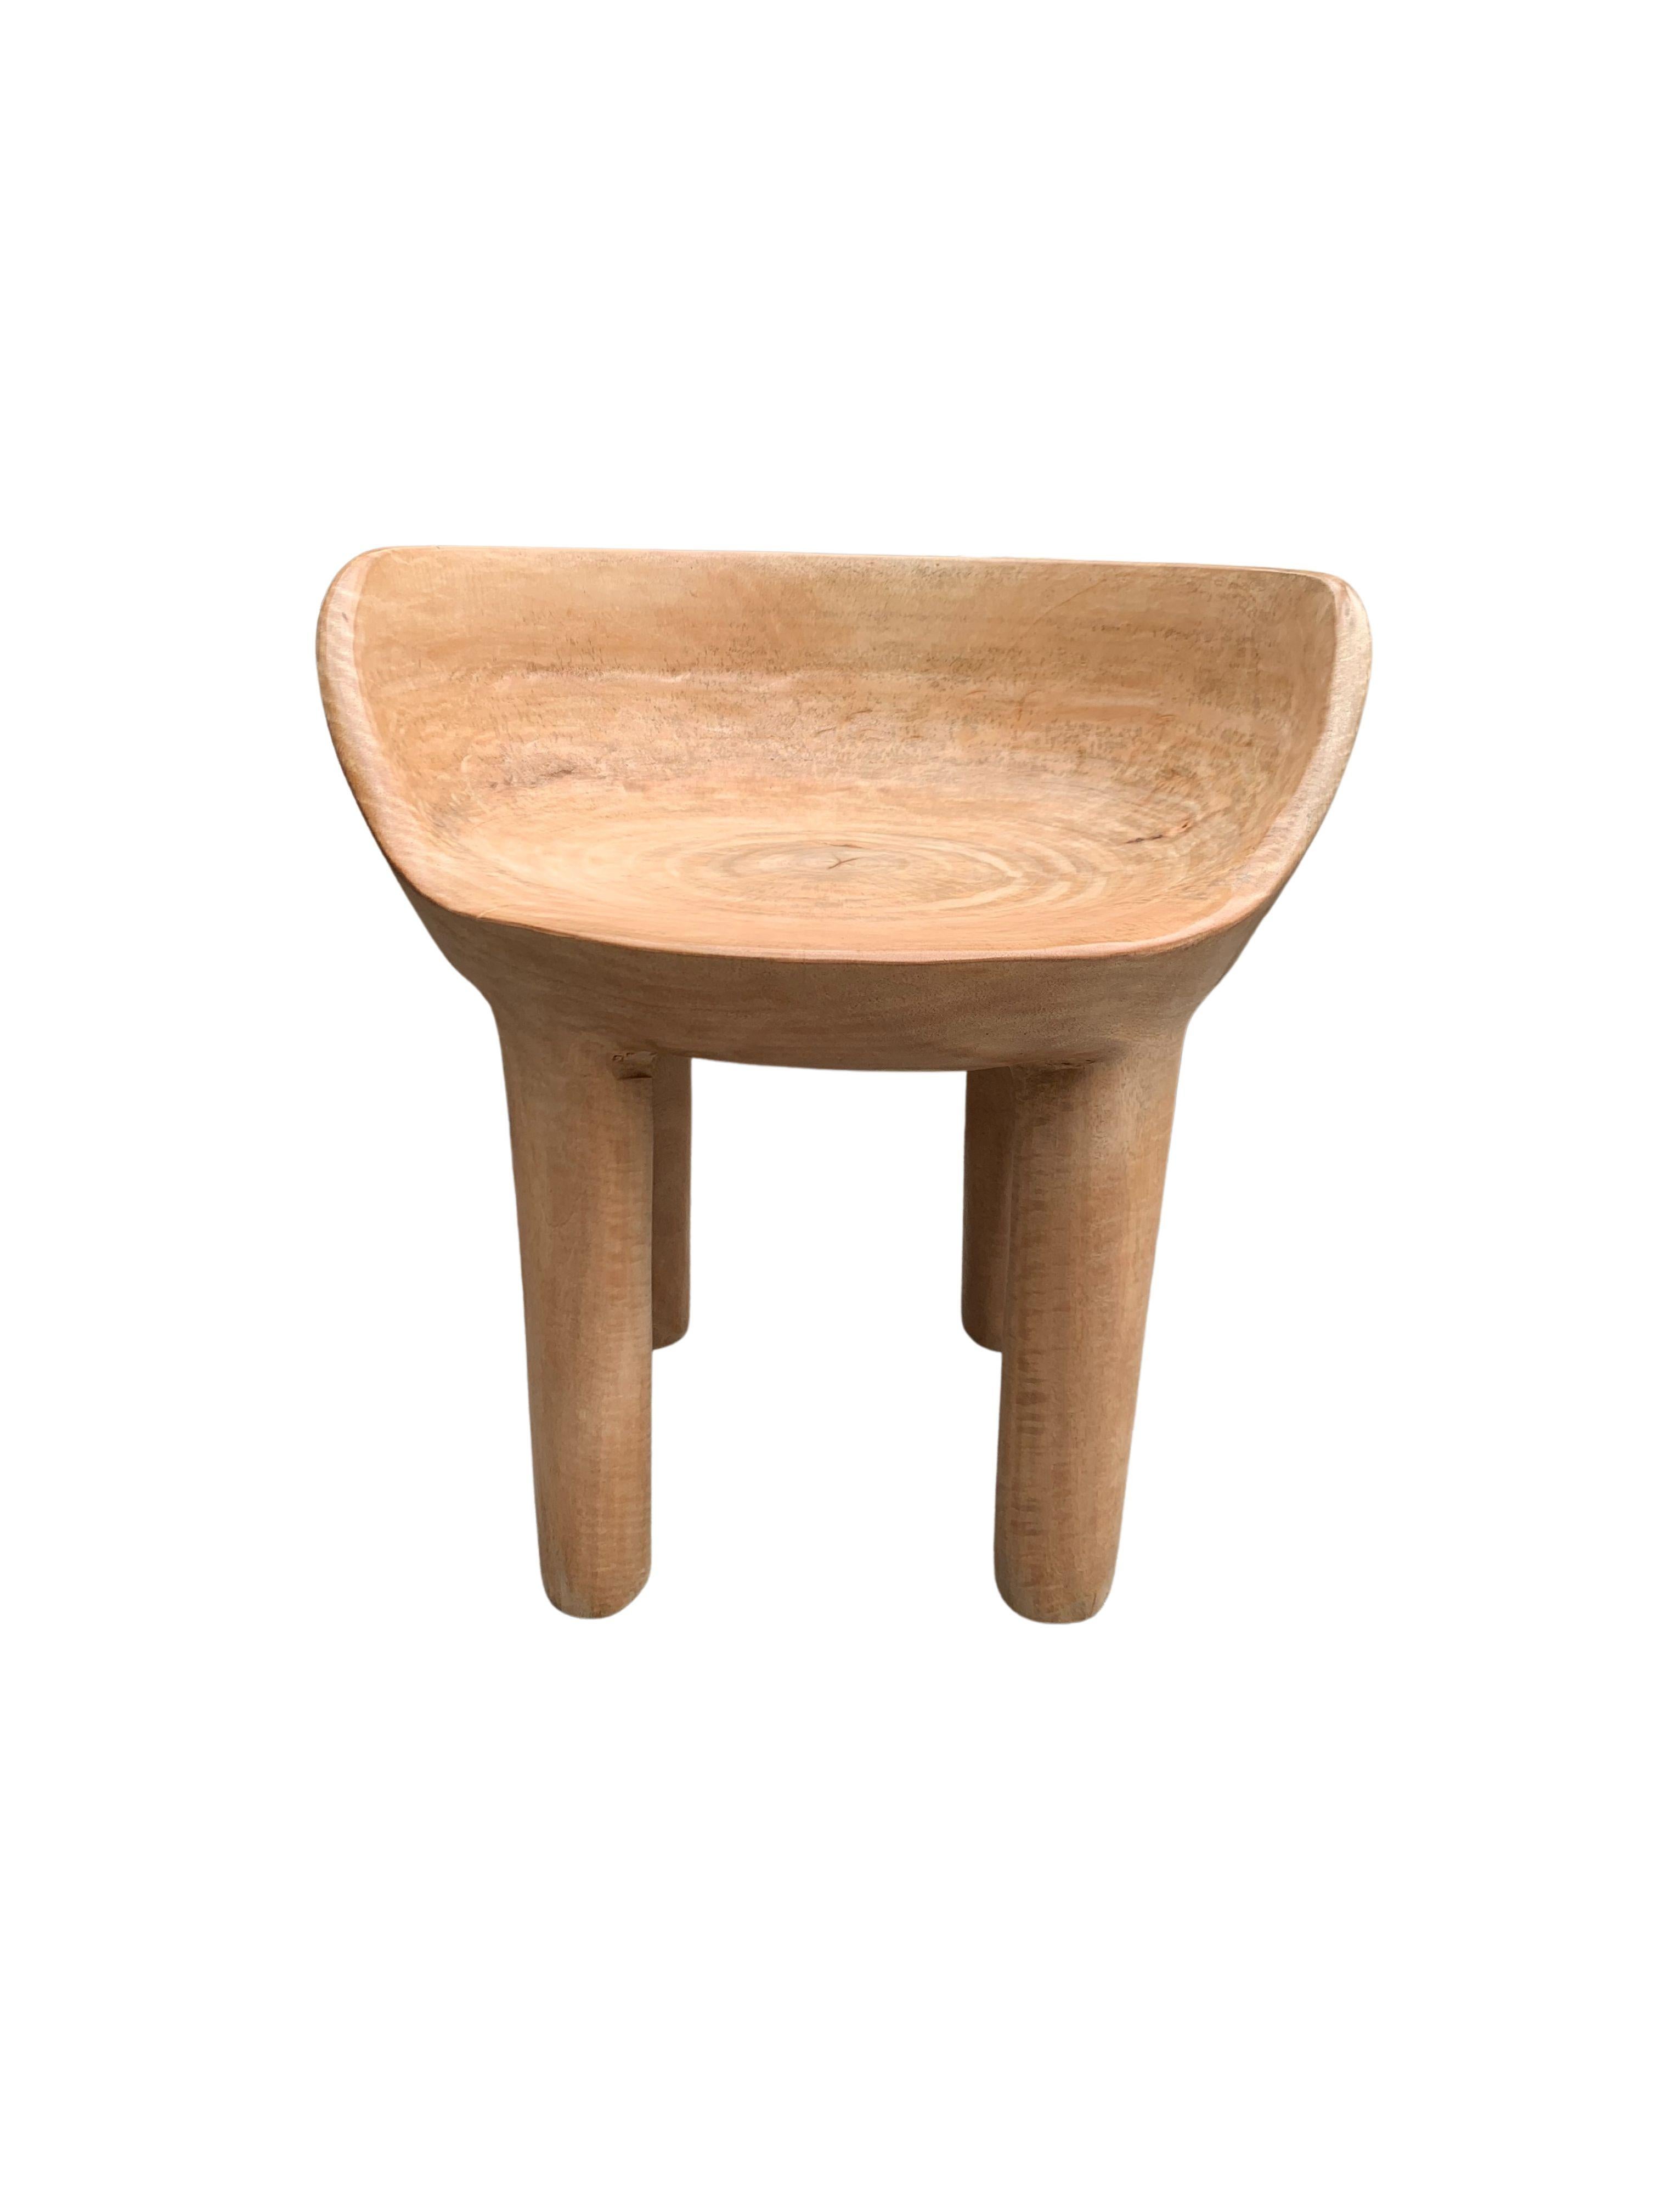 Cette chaise merveilleusement sculpturale a été fabriquée à partir d'un seul bloc de bois de manguier. La chaise repose sur 4 pieds élancés. Son pigment neutre lui permet de s'adapter à tous les espaces. Une pièce sculpturale unique et polyvalente